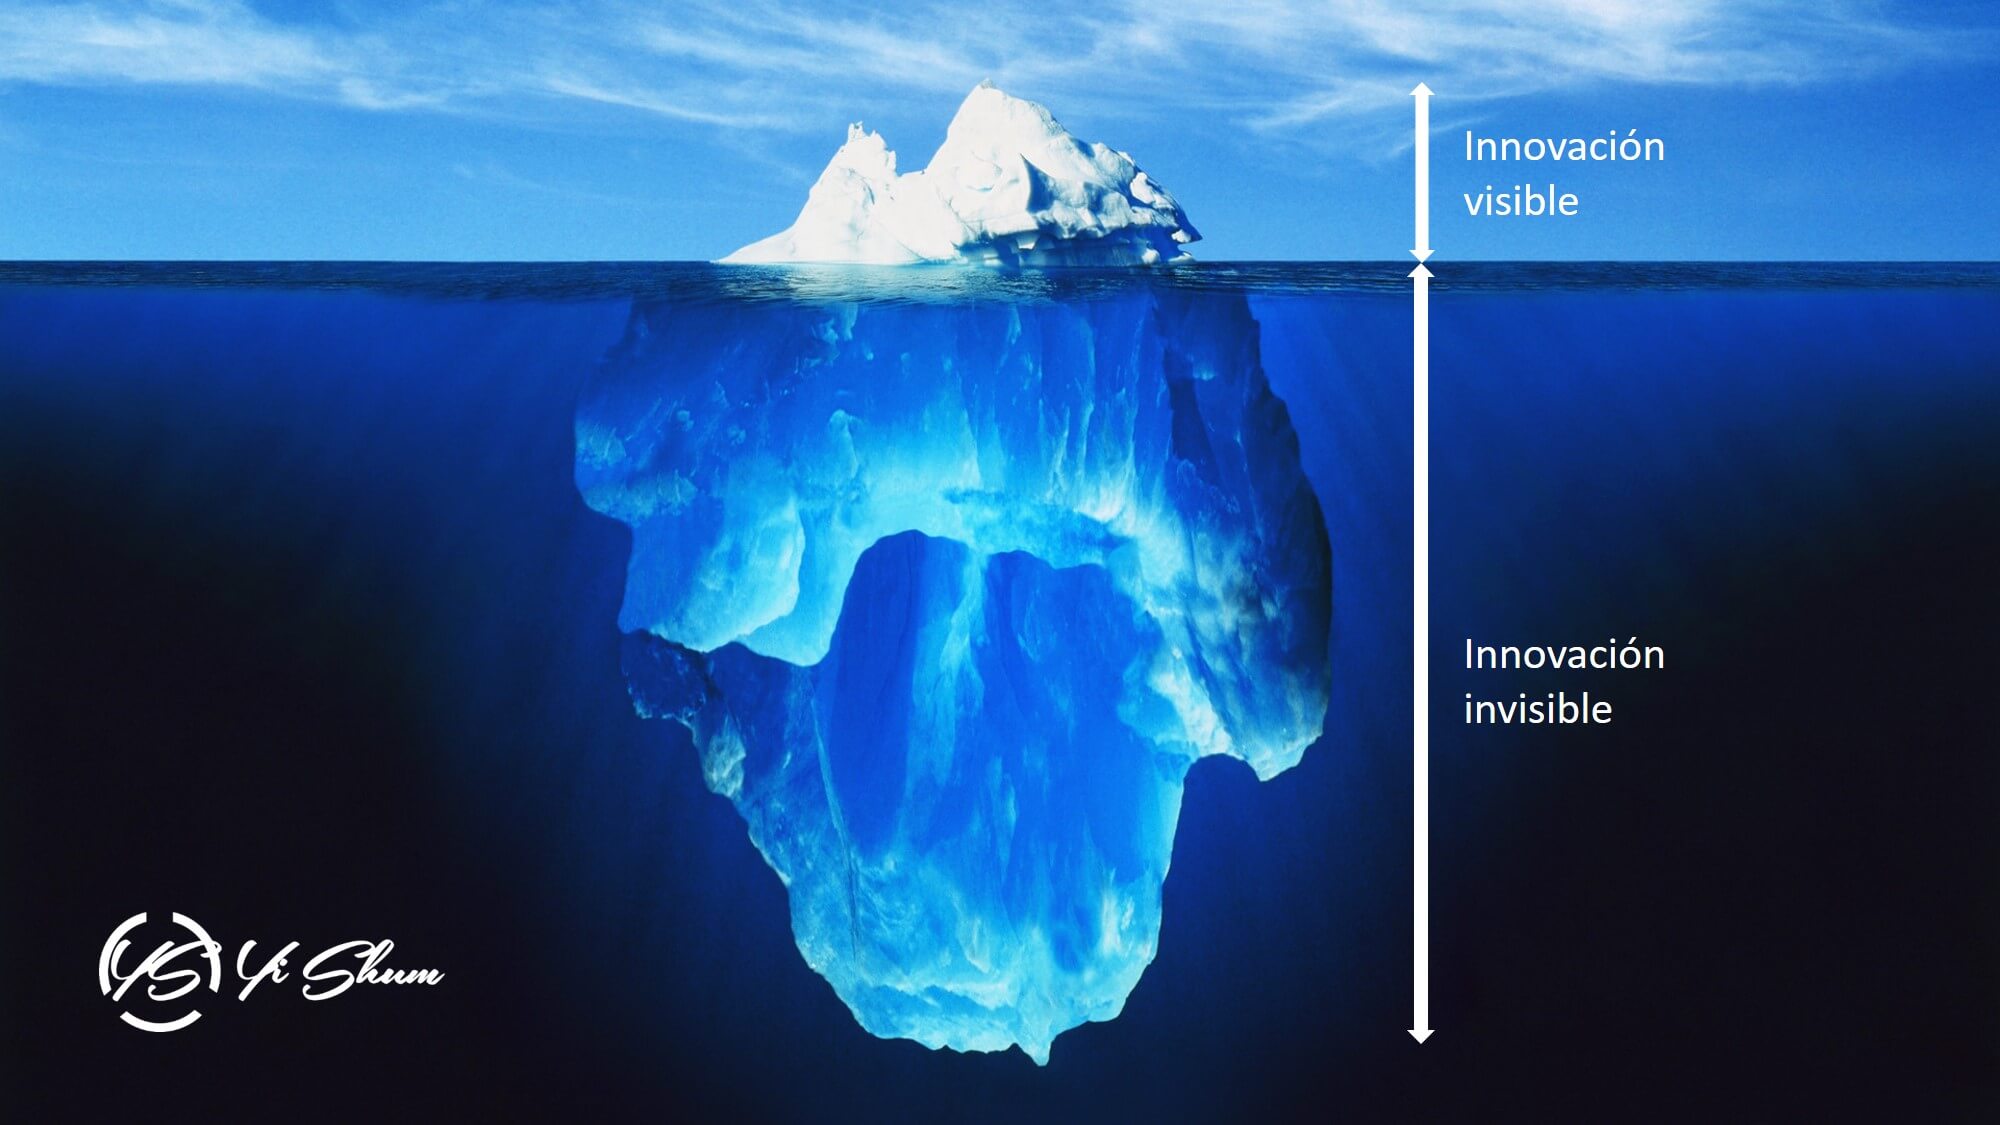 El iceberg de la innovación imagen